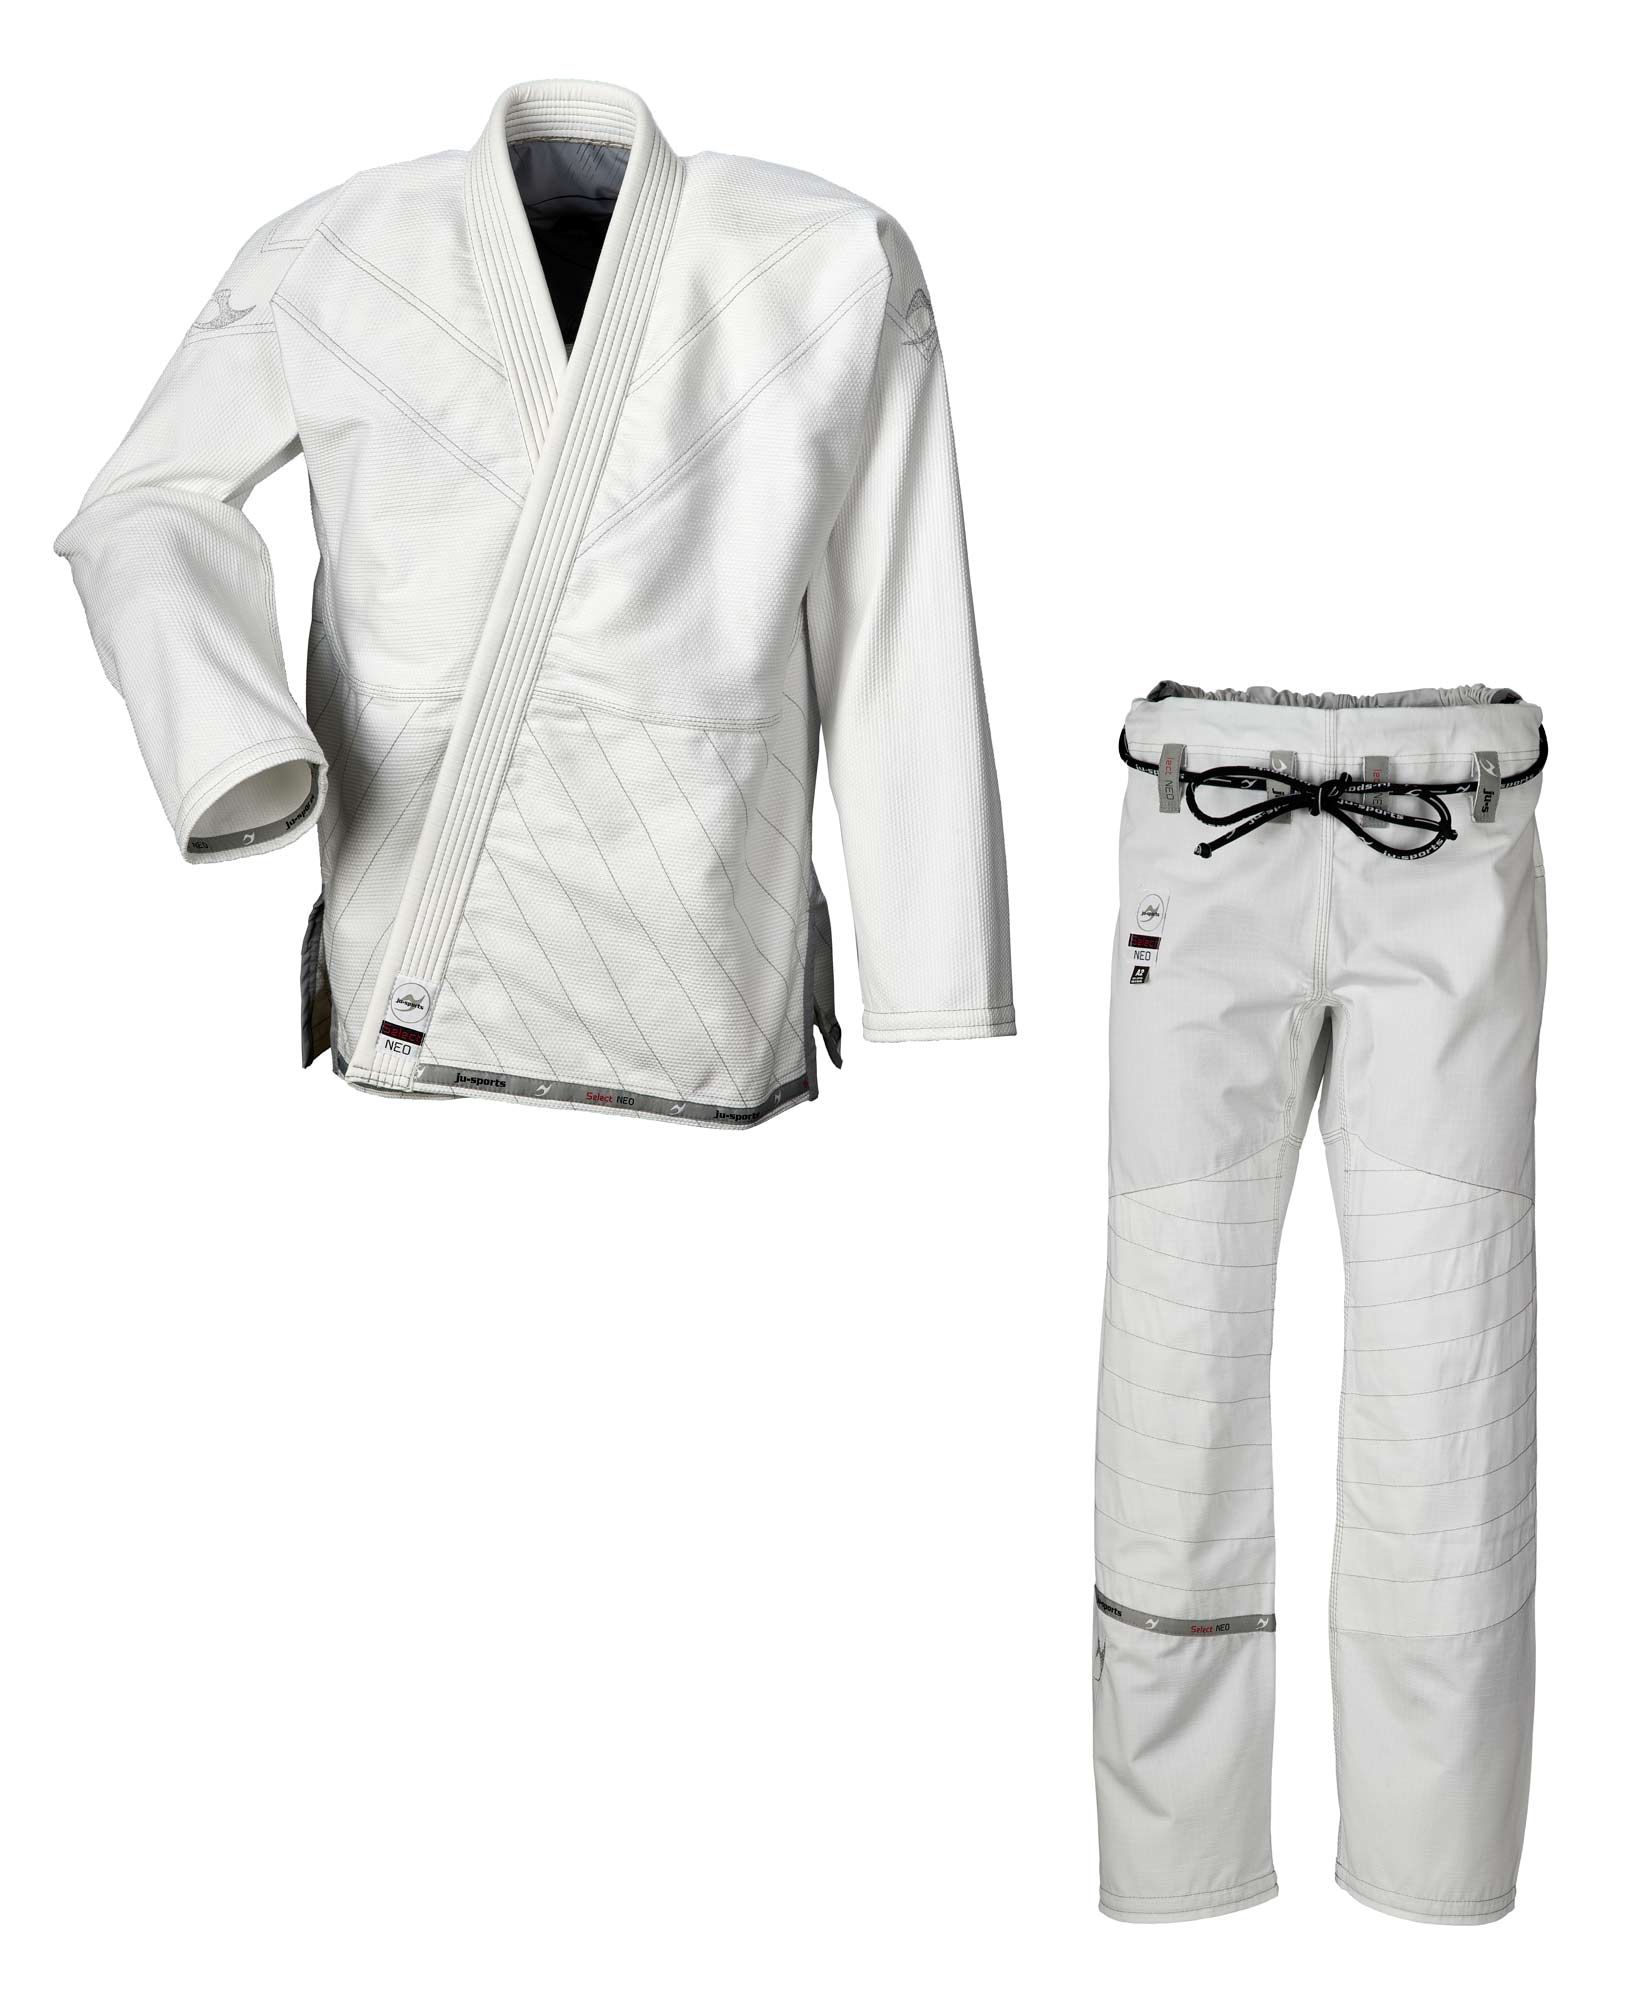 BJJ Select Neo Set jacket + pants white